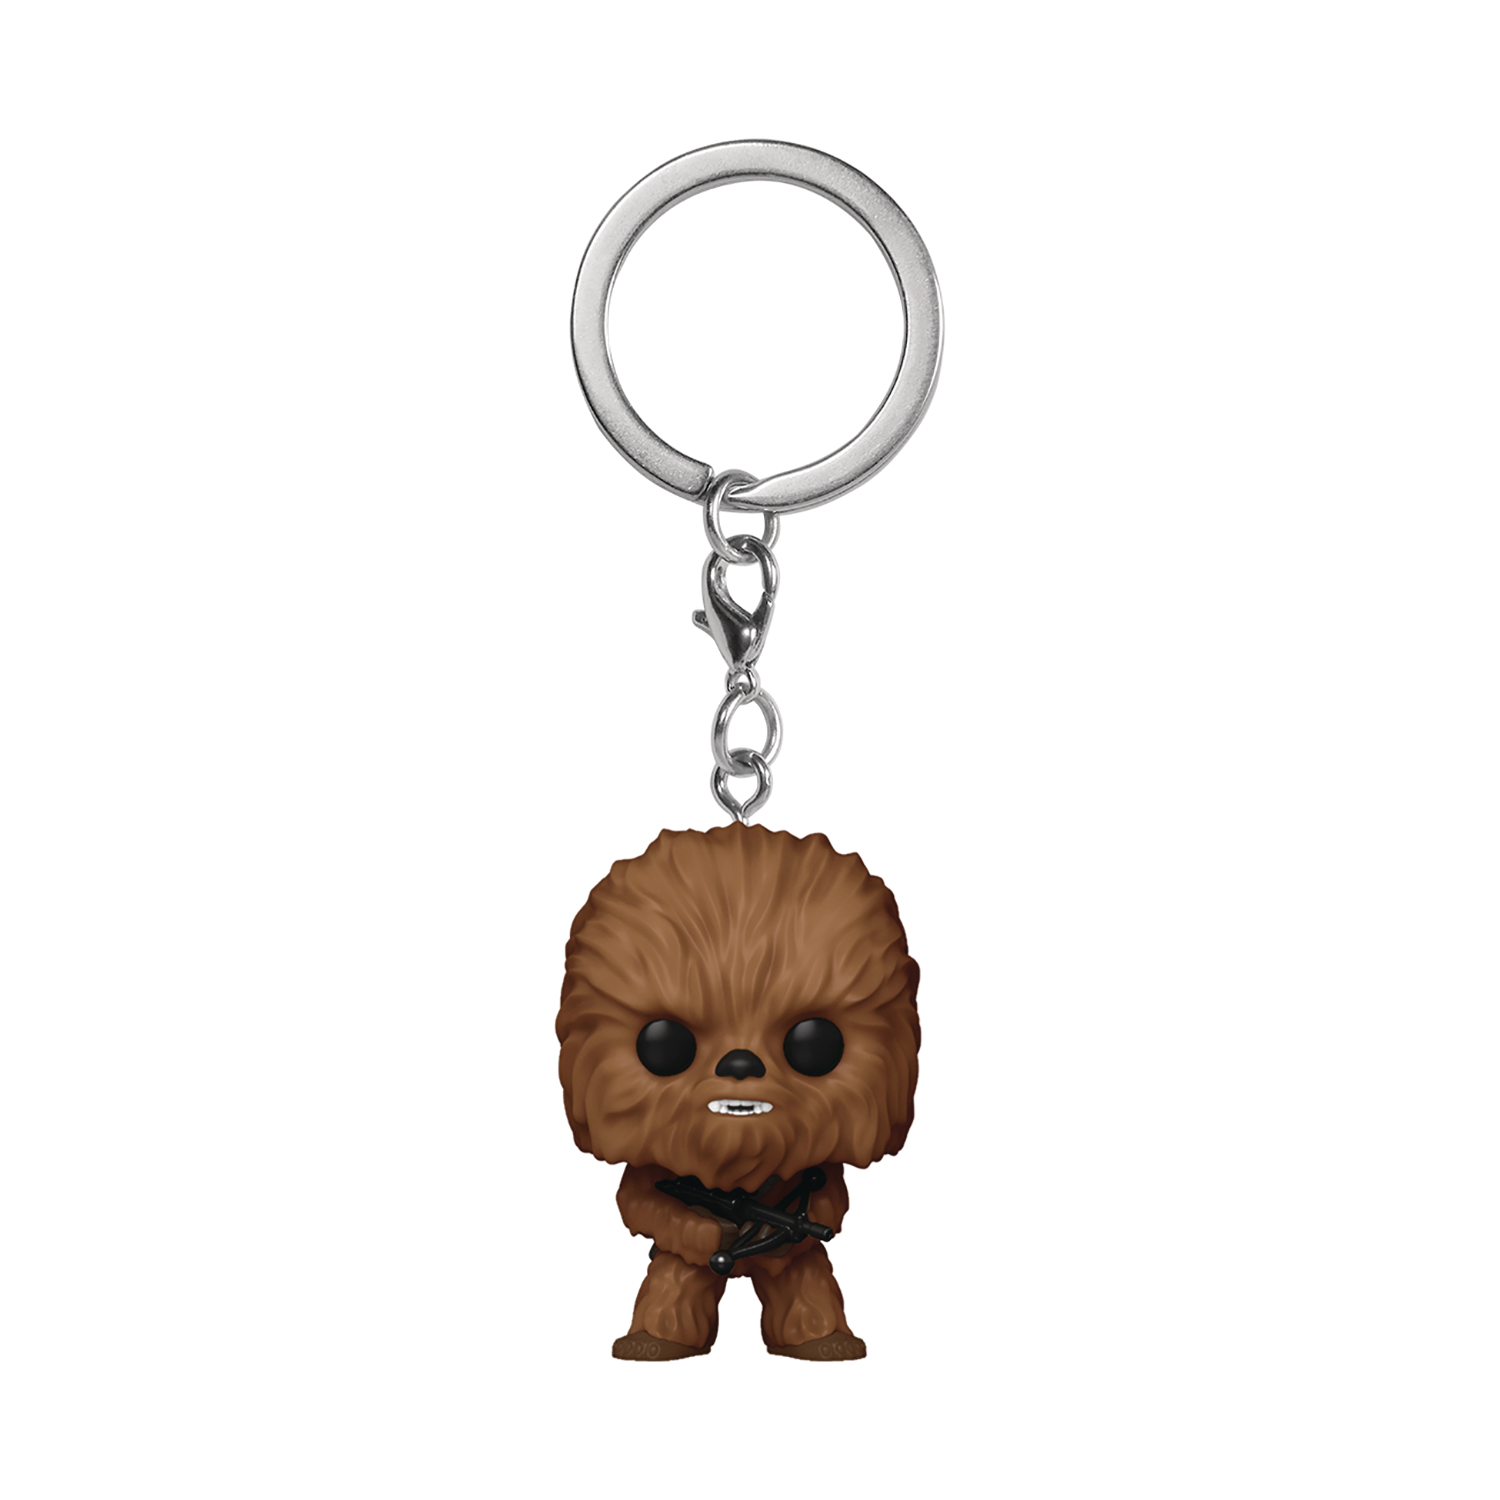 Pocket Pop Star Wars Chewbacca Keychain